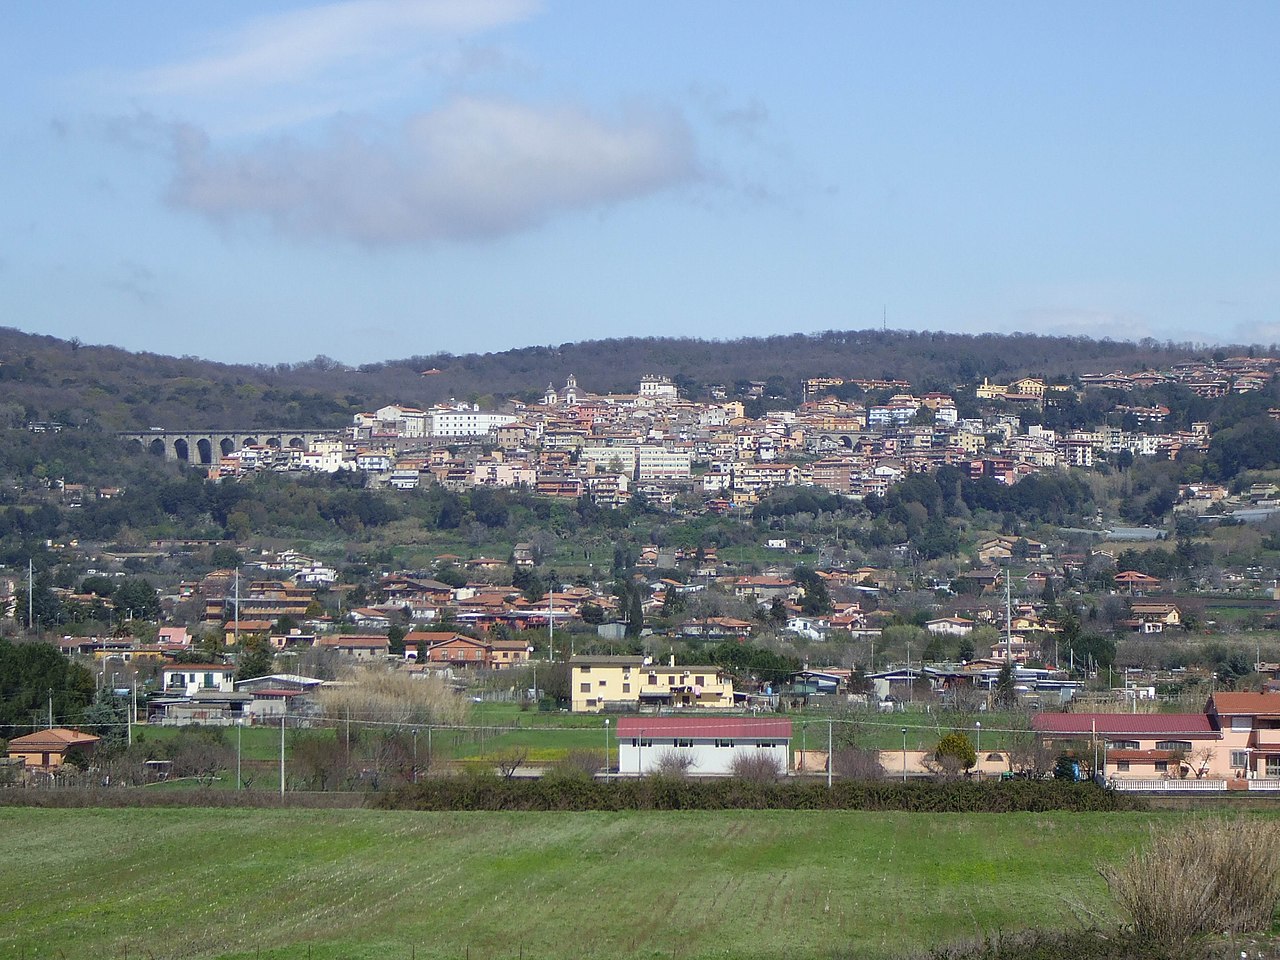 Аричча — город в Италии, где похоронен Вольтерра Вито.